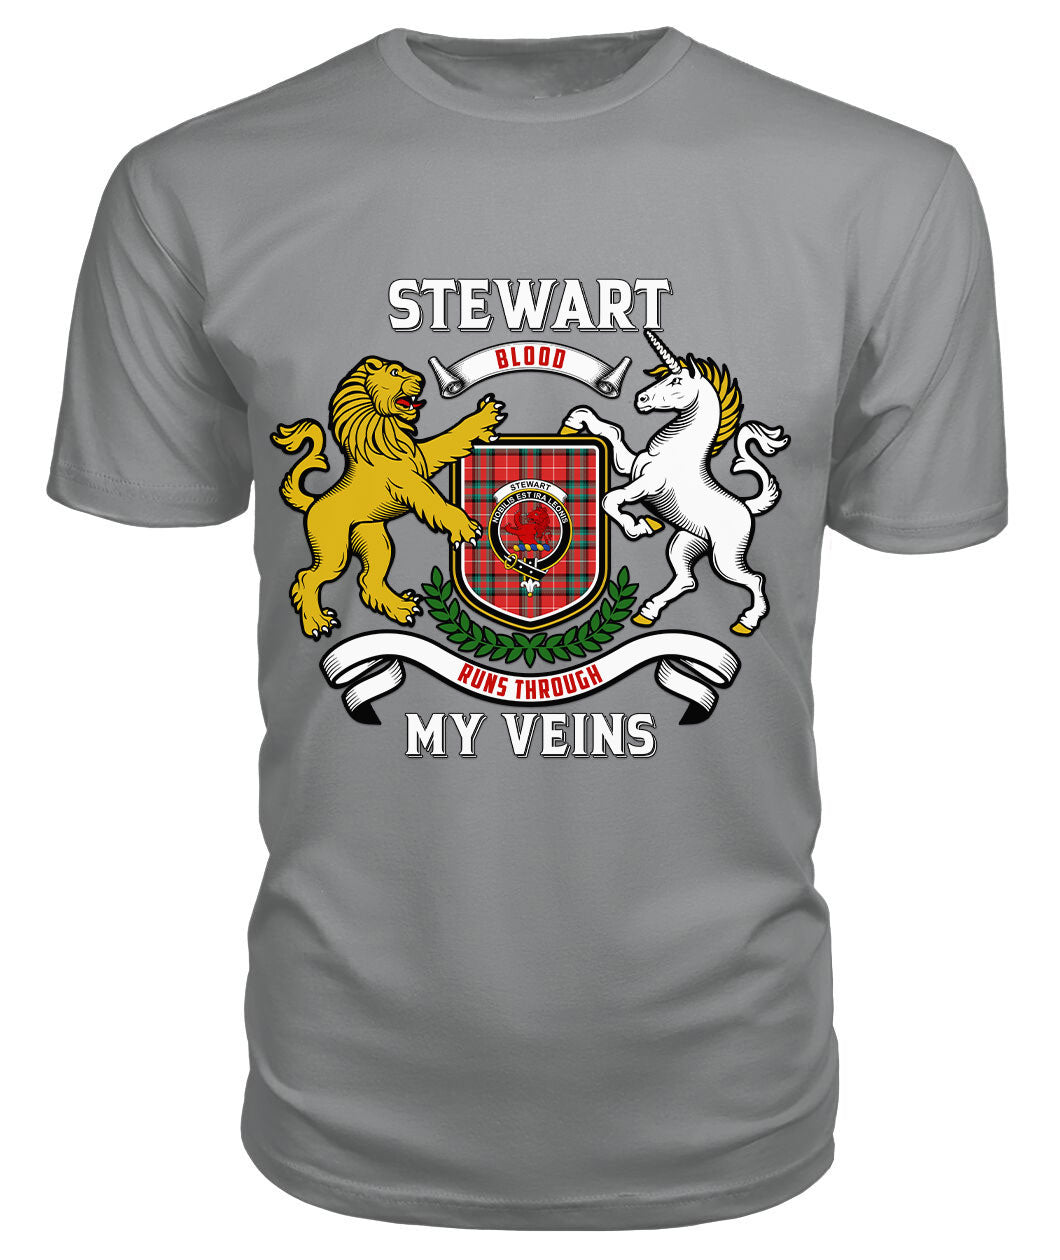 Stewart (Stuart) of Bute Tartan Crest 2D T-shirt - Blood Runs Through My Veins Style